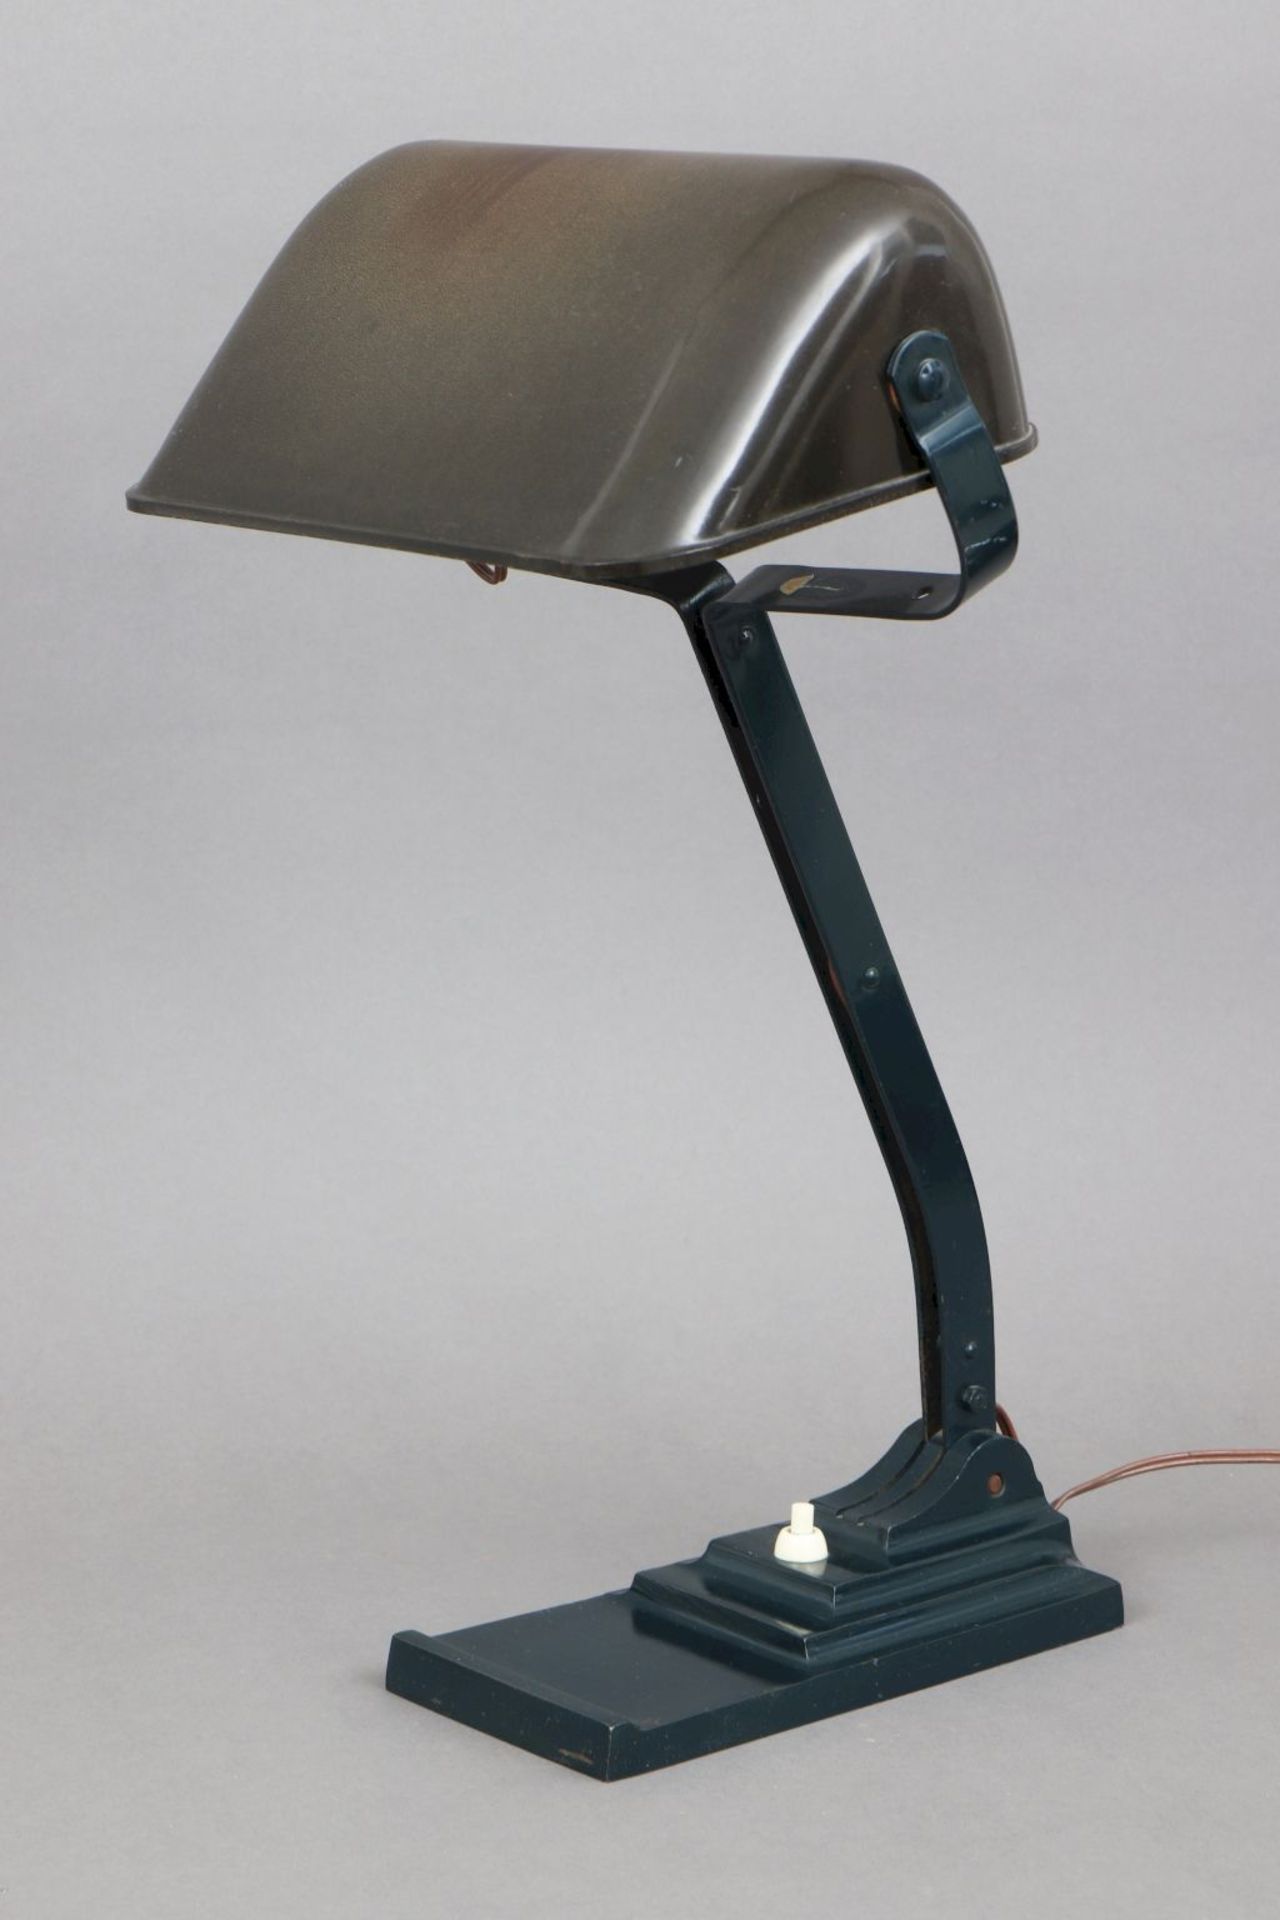 ERPE Schreibtischlampe der 1930er JahreEisenstand und Bakelitschirm (schwarz-braun), Druckknopf